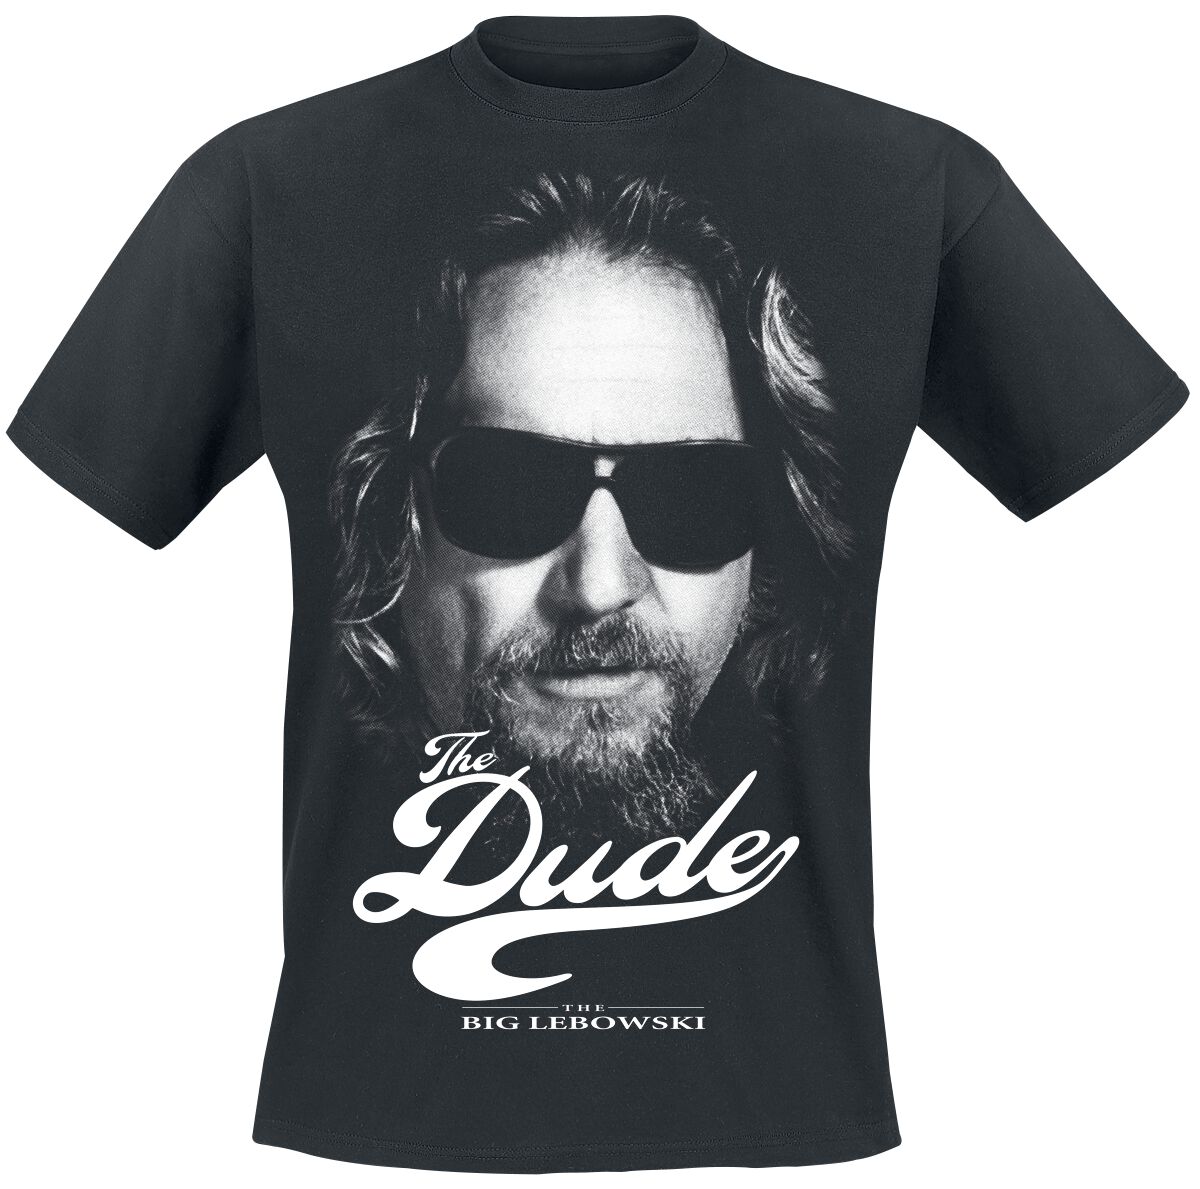 The Big Lebowski T-Shirt - The Dude - S bis L - für Männer - Größe L - schwarz  - Lizenzierter Fanartikel